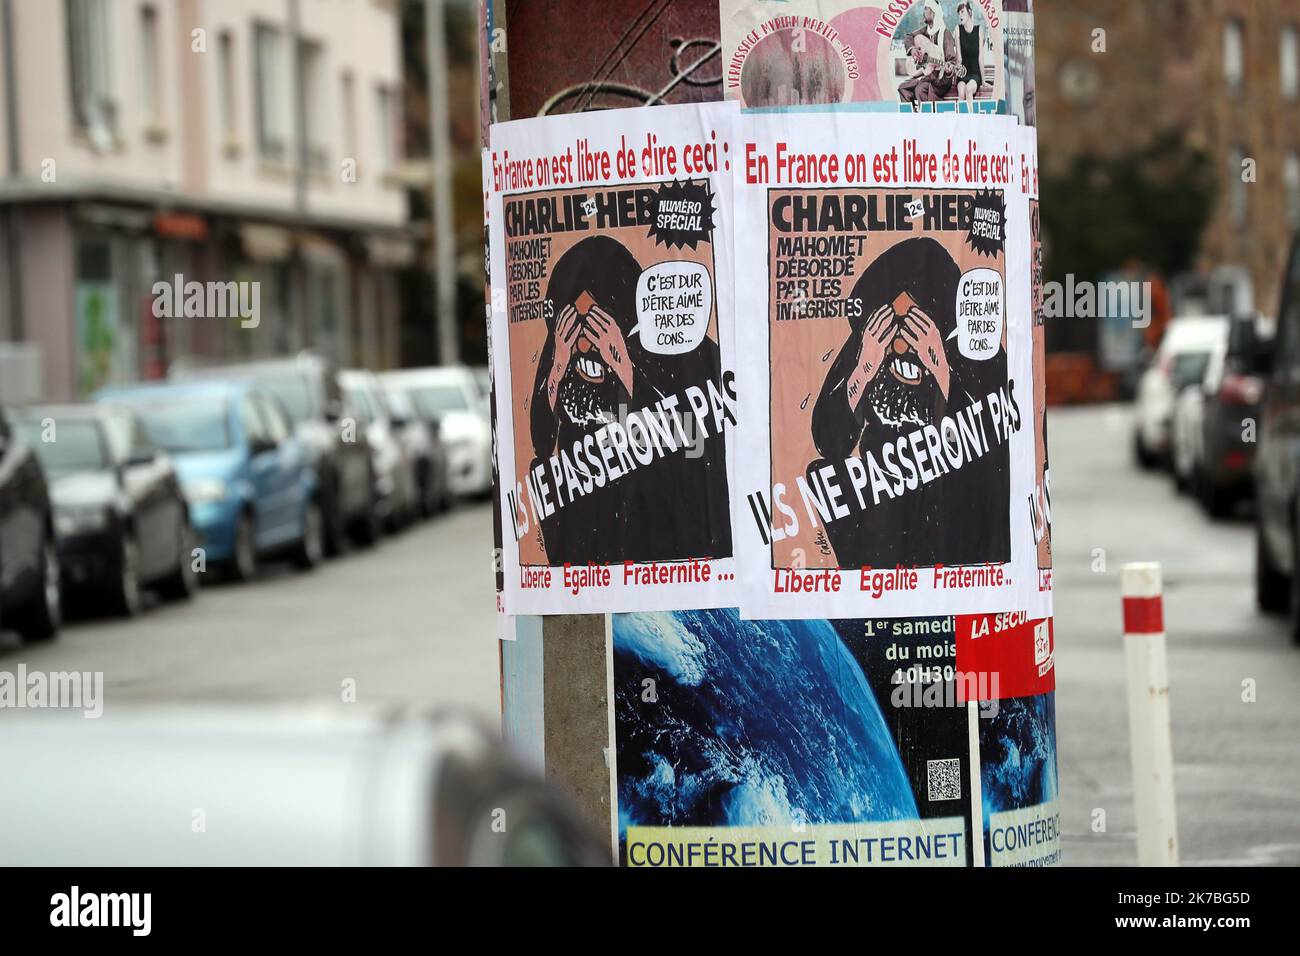 ©PHOTOPQR/L'ALSACE/Thierry GACHON ; Colmar ; 23/10/2020 ; Une semaine après l'assassinat de Samuel Paty, des affiches reproduisant la une du journal Charlie Hebdo avec la caricature de Mahomet dessinée par Cabu 'C'est dur d'être aimé par les cons' ont été collées dans la nuit du 23 octobre 2020 sur les colonnes Morris de Colmar (Haut-Rhin) avec le message suivant : 'En France on est libre de dire ceci' et 'Ils ne passeront pas', suivi de 'Liberté Egalité Fraternité...' (Rue du Logelbach à Colmar). A week after the assassination of Samuel Paty, posters reproducing the front page of the Charlie  Stock Photo